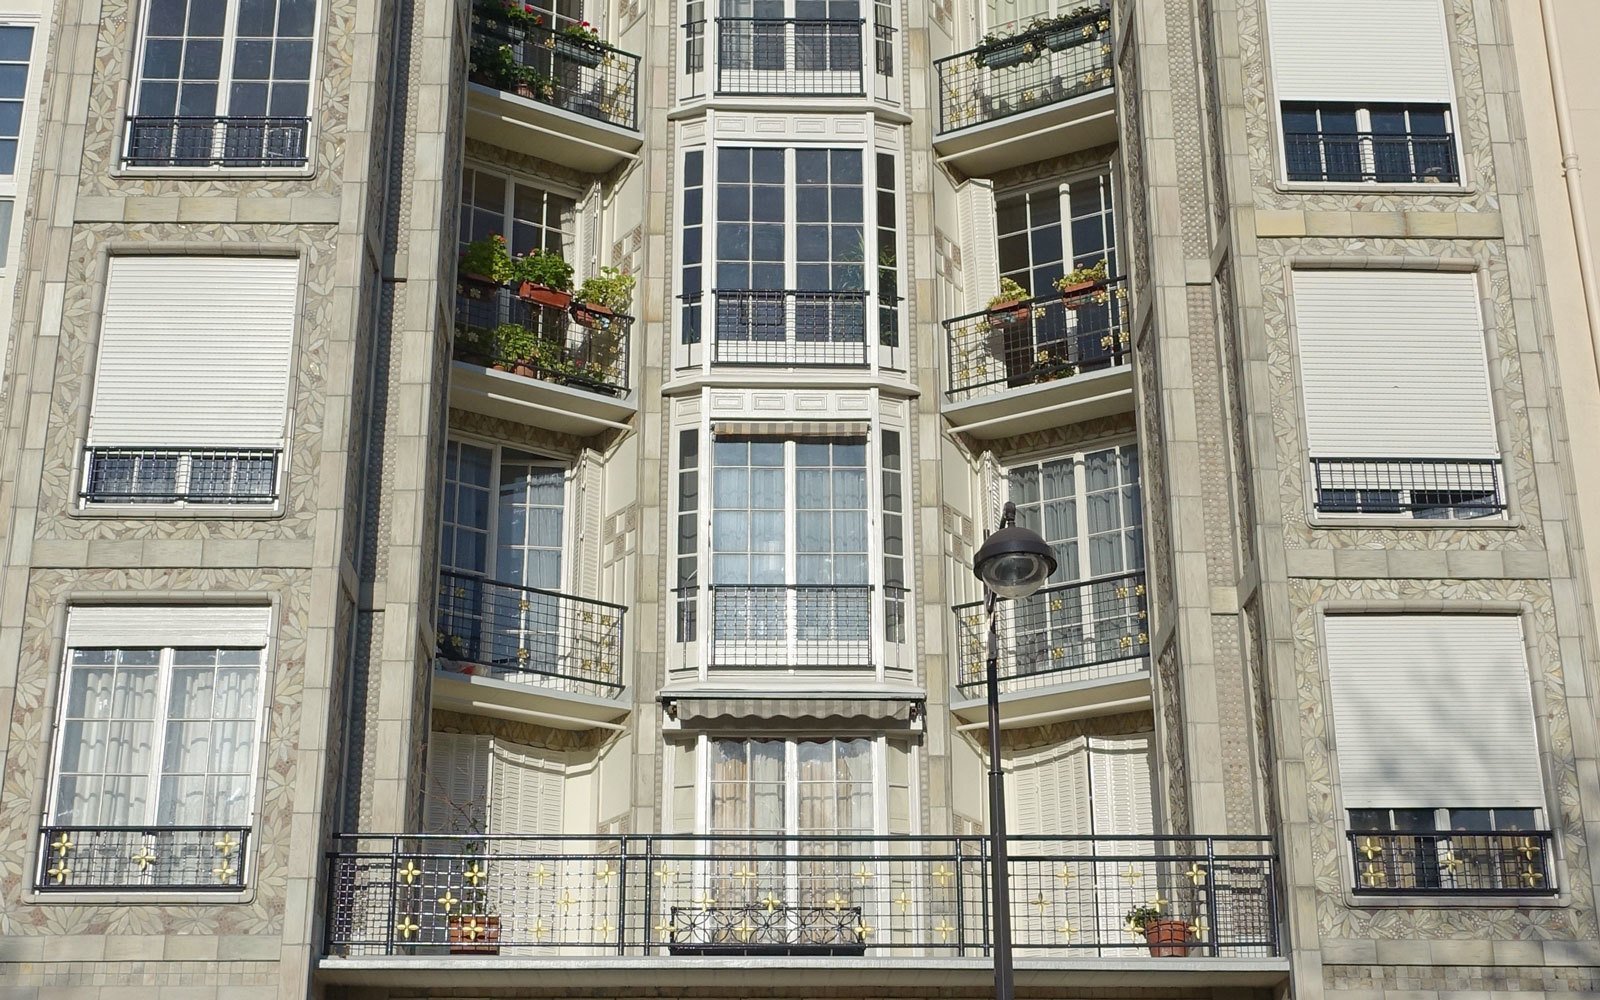 Жилой дом на улице Бенджамина Франклина. Фрагмент фасада. Париж, Франция. 1902&ndash;1904. Источник: Wikipedia / Guilhem Vellut